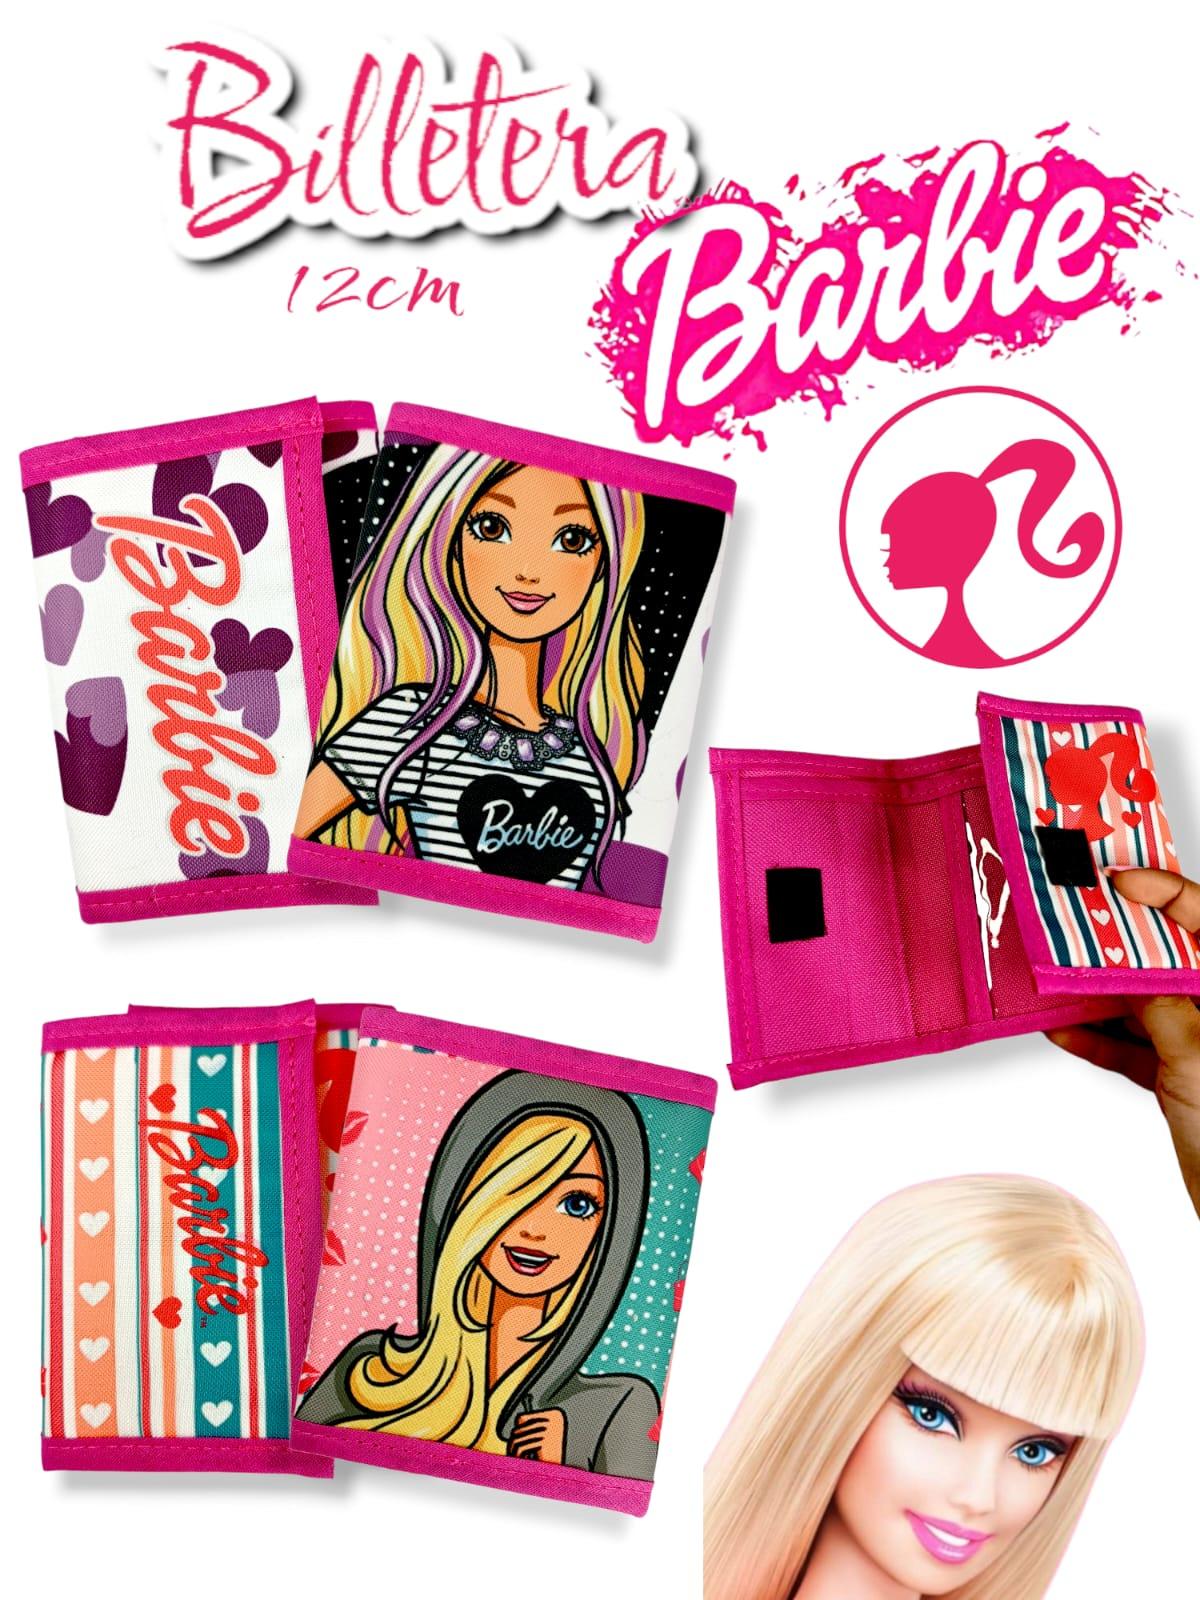 Billetera Infantil Barbie 12cm